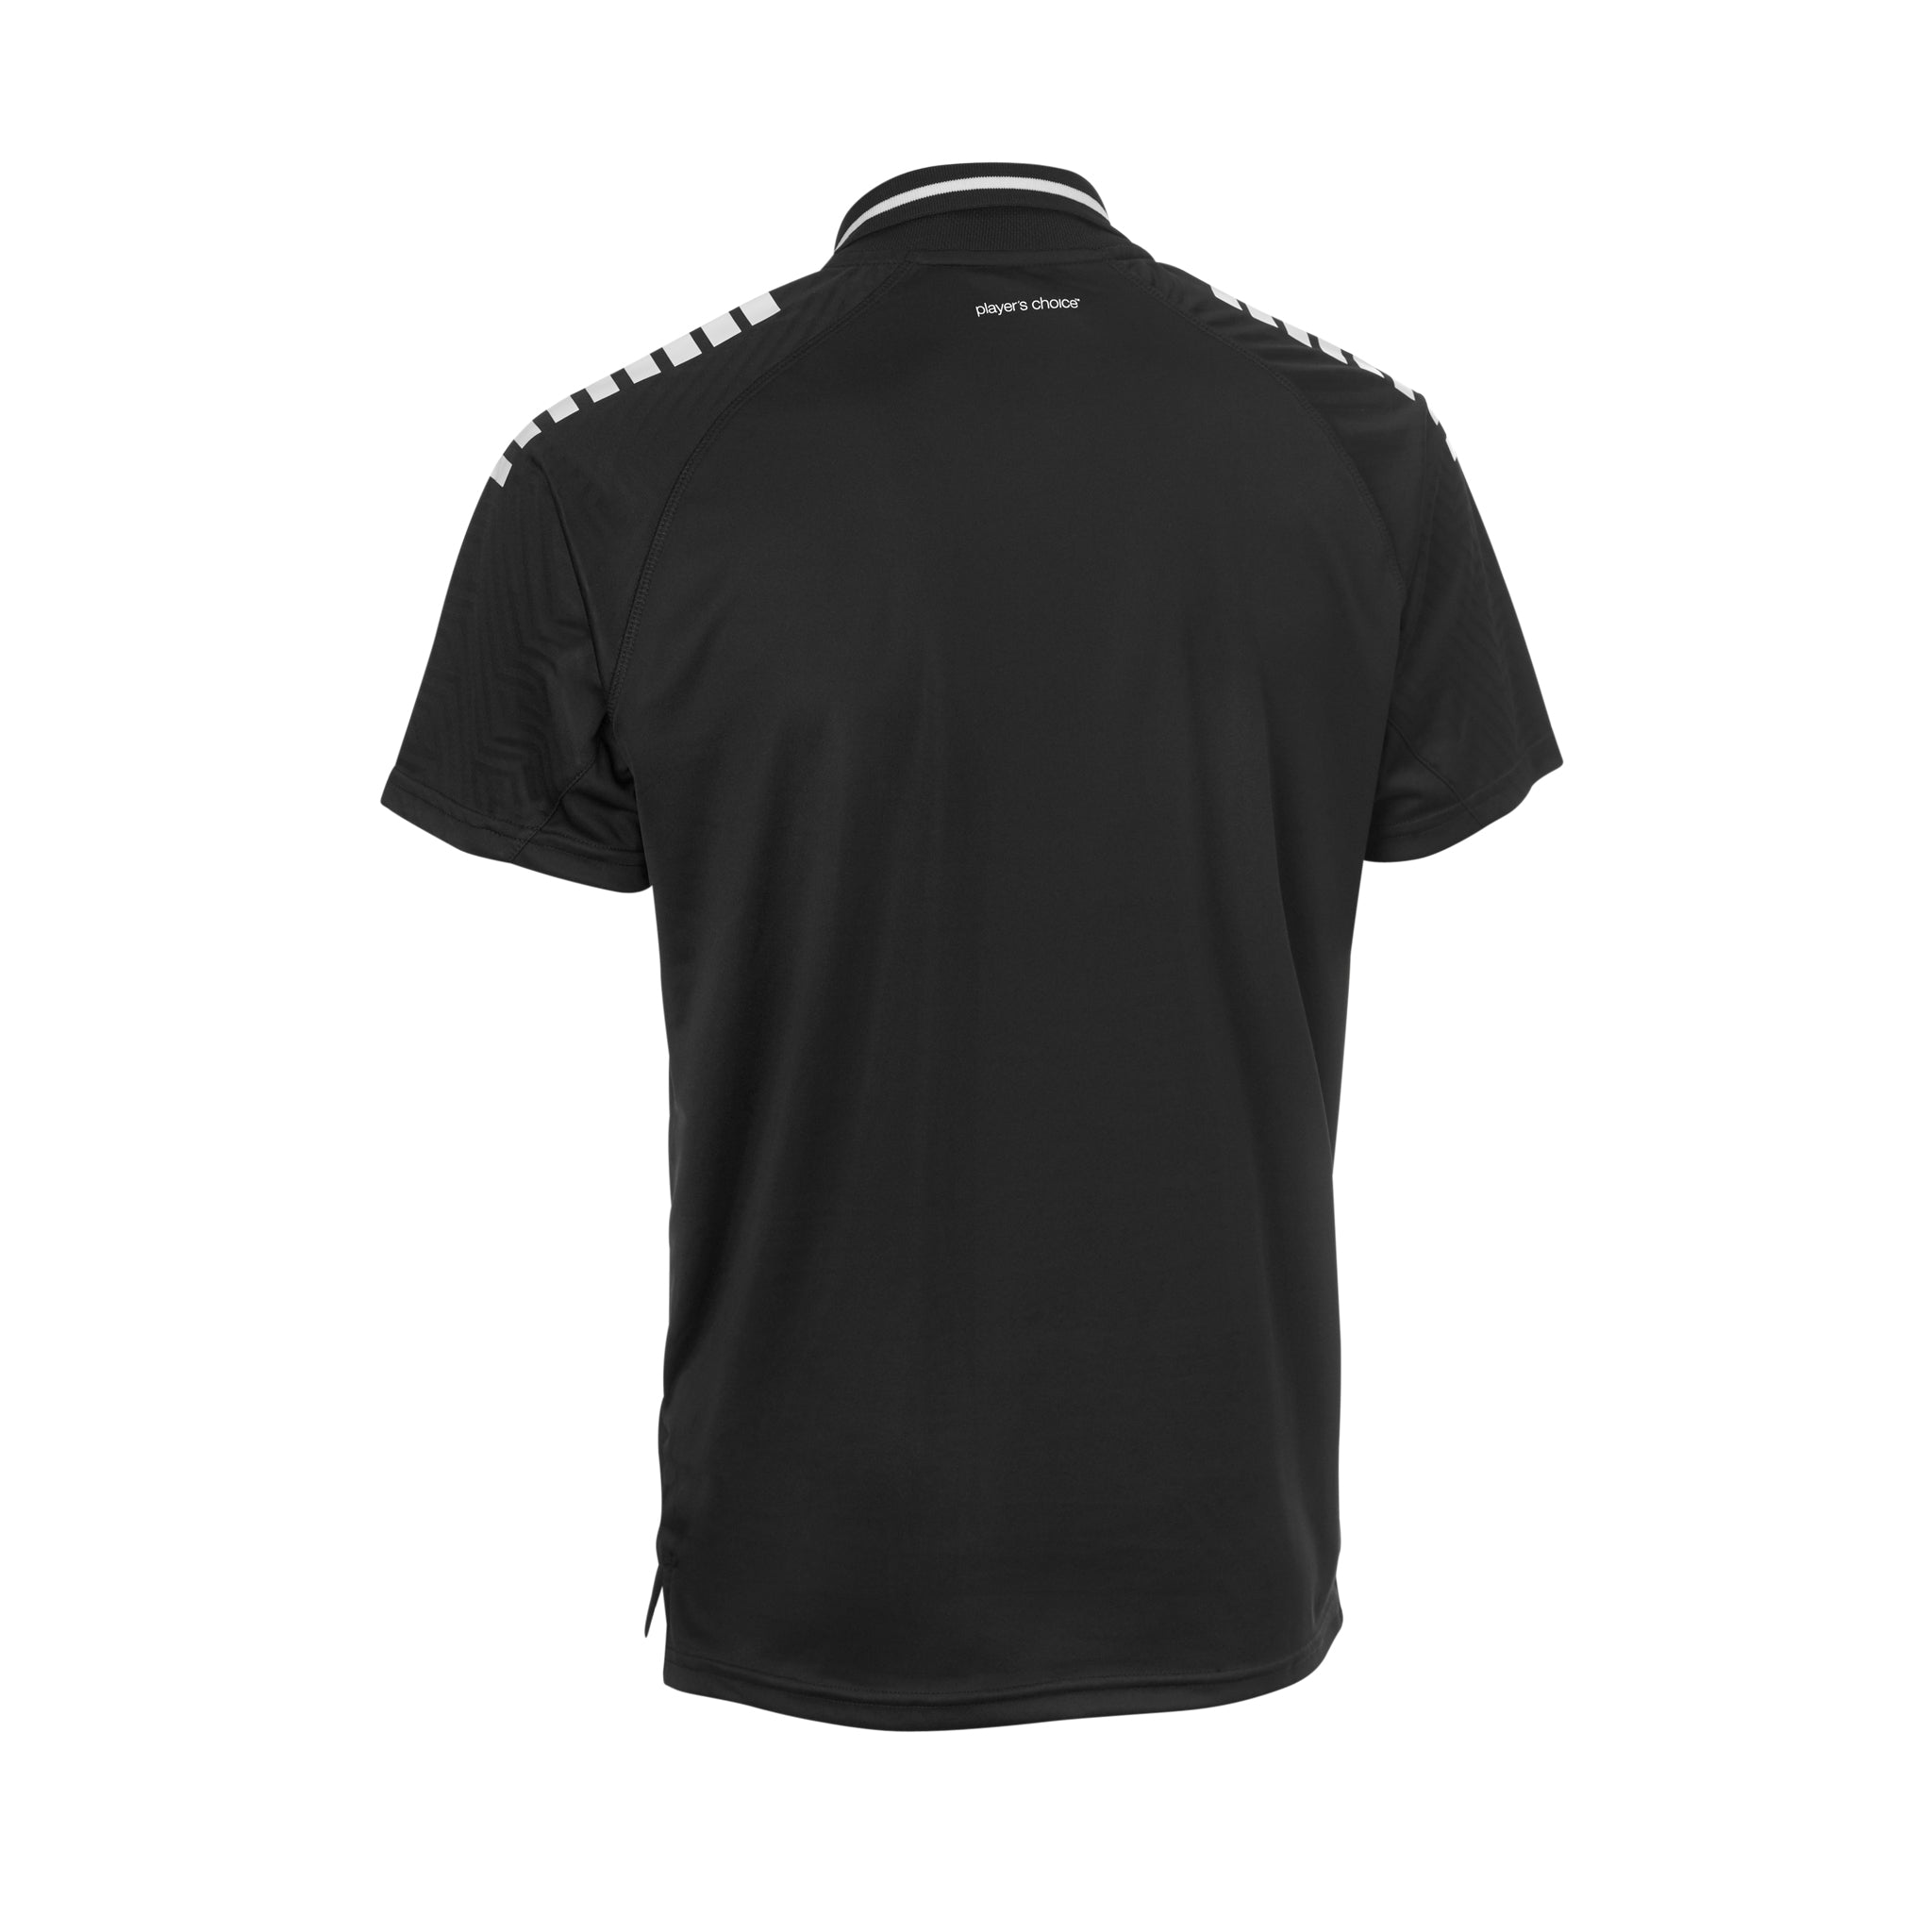 Primo Polo-Shirt v24 #farbe_schwarz/weiß #farbe_schwarz/weiß